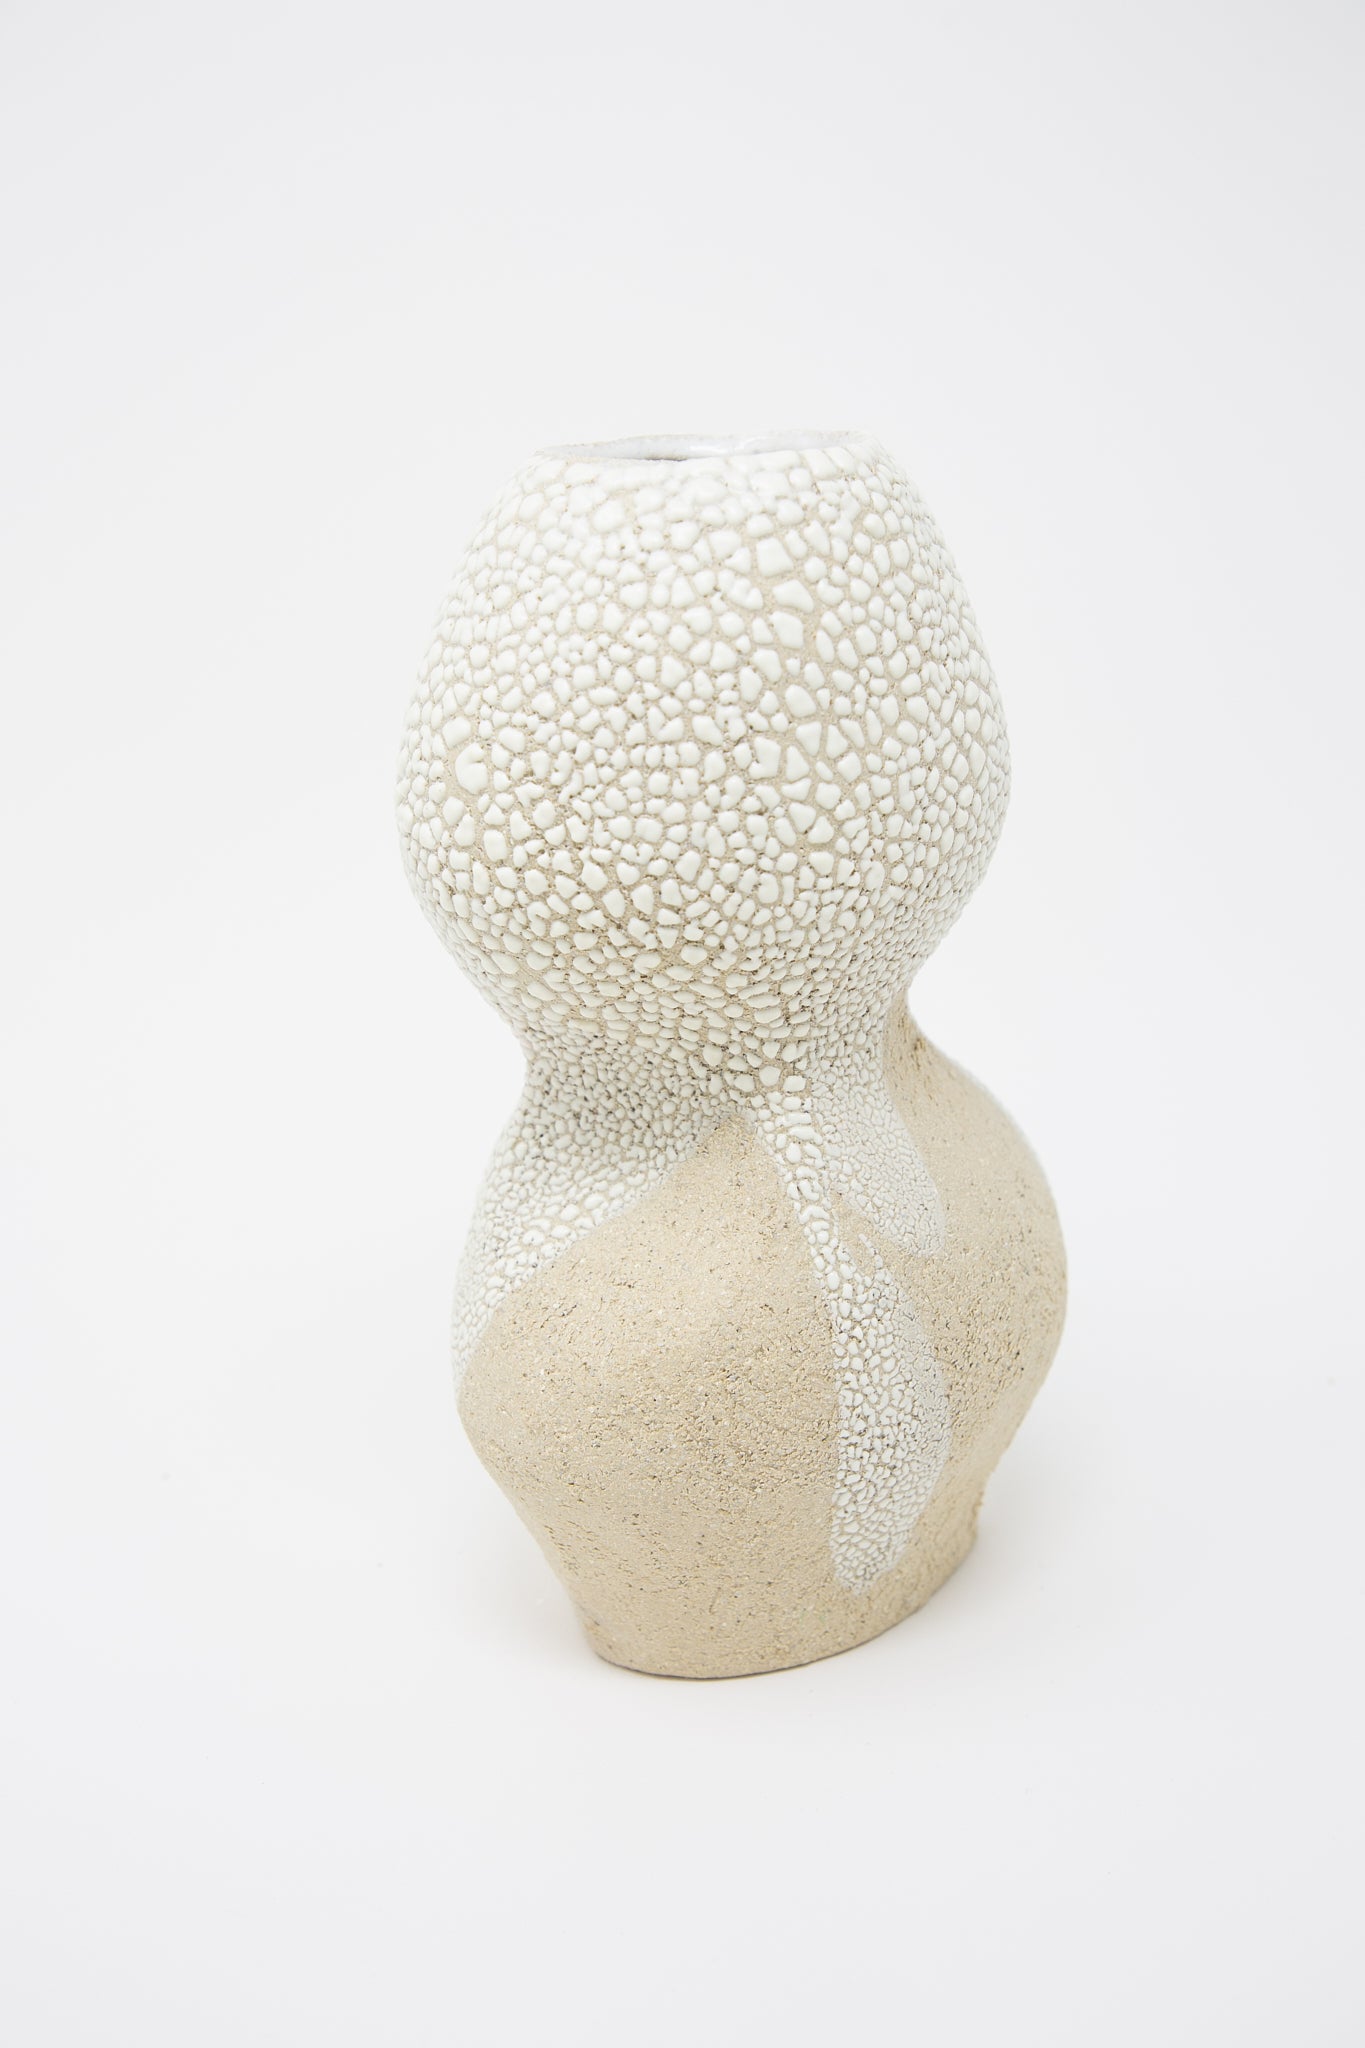 A Lost Quarry Hand Built Vessel No. 000744 Bud Vase crackle glazed vase resting on a white surface.